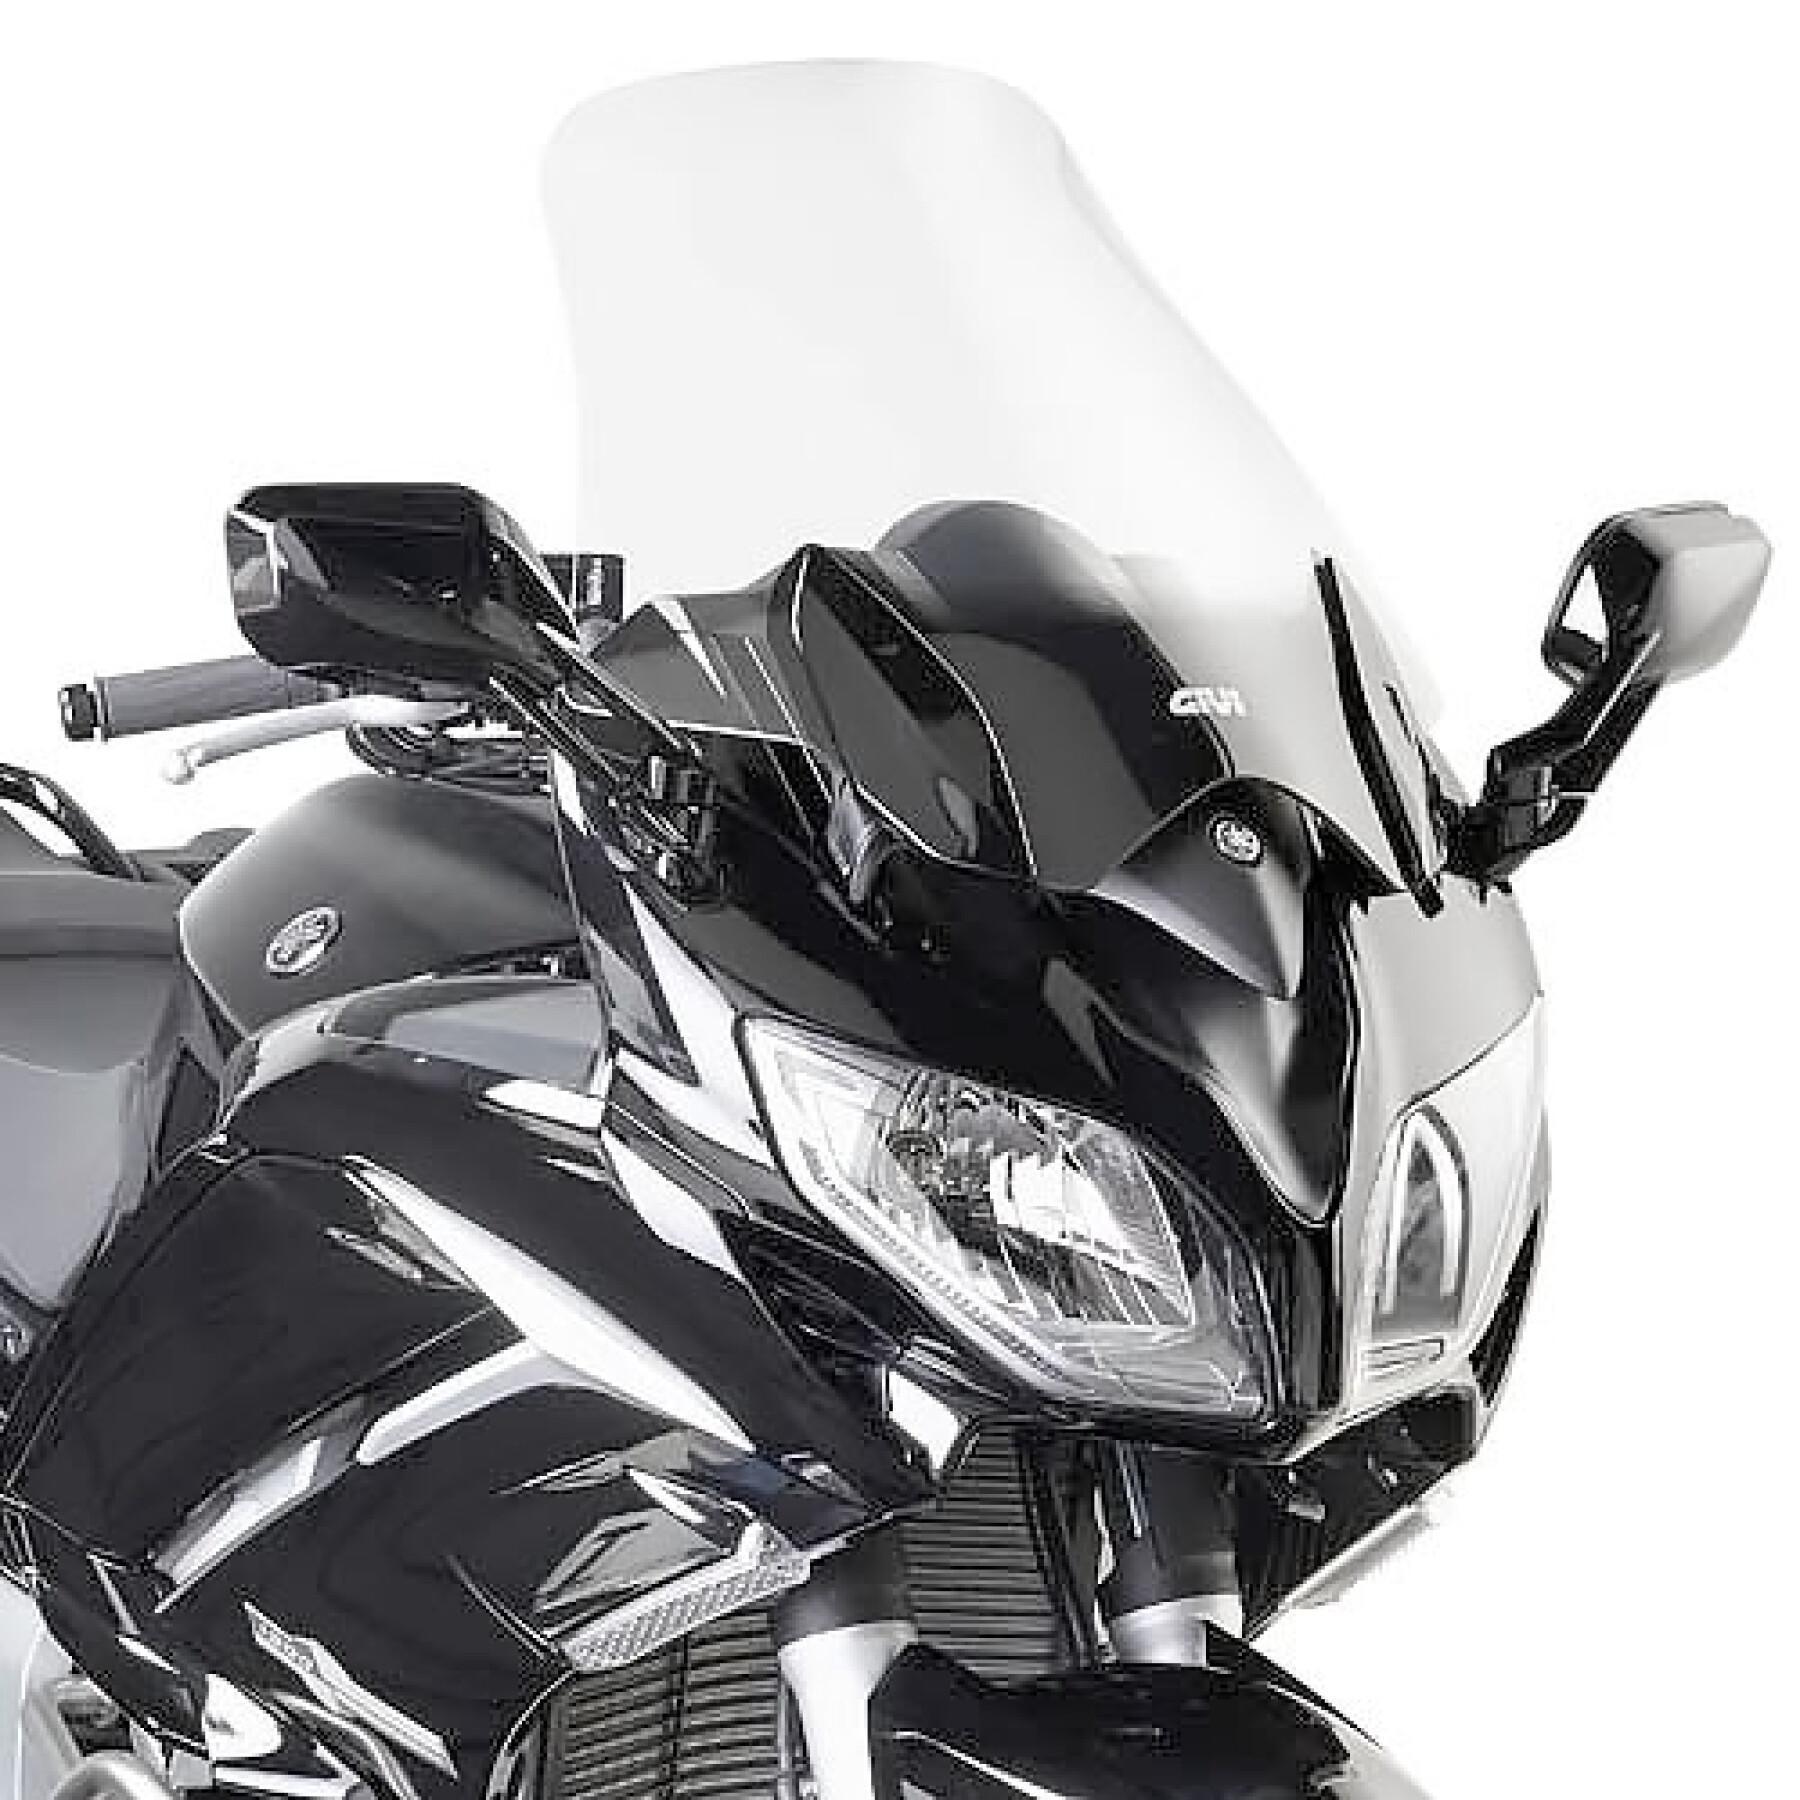 Bolha de motocicleta Givi Yamaha Fjr 1300 (2013 À 2020)